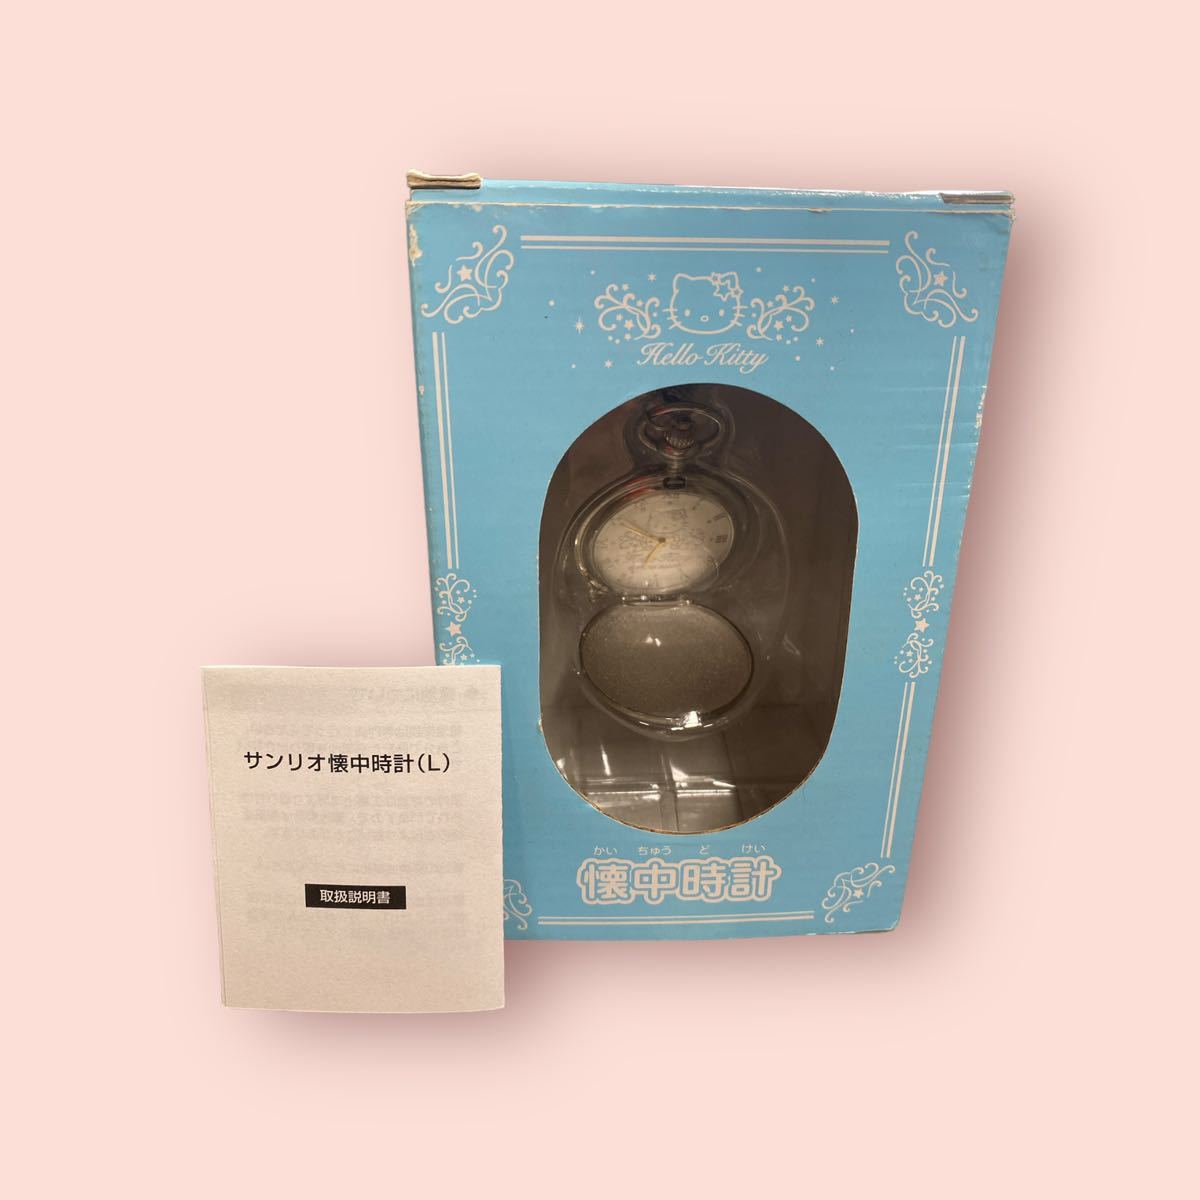 未使用品 レア品 サンリオ ハローキティ 懐中時計 (L) Sanrio Hello Kitty 長期保管品 現状品の画像1